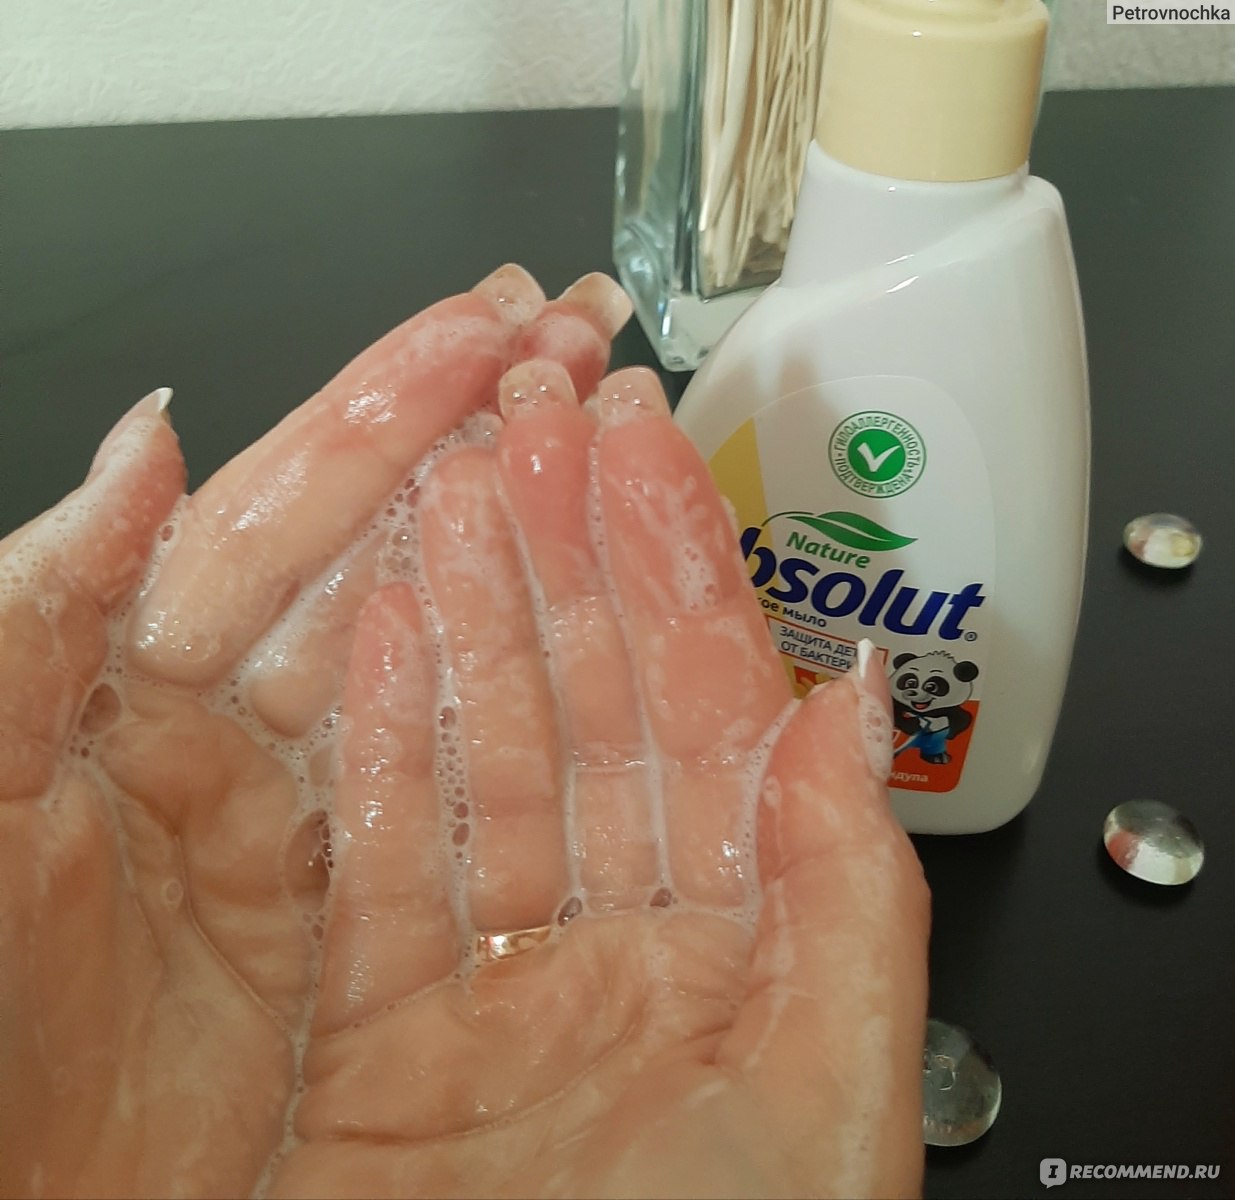 Жидкое мыло Absolut Nature Детское с календулой фото